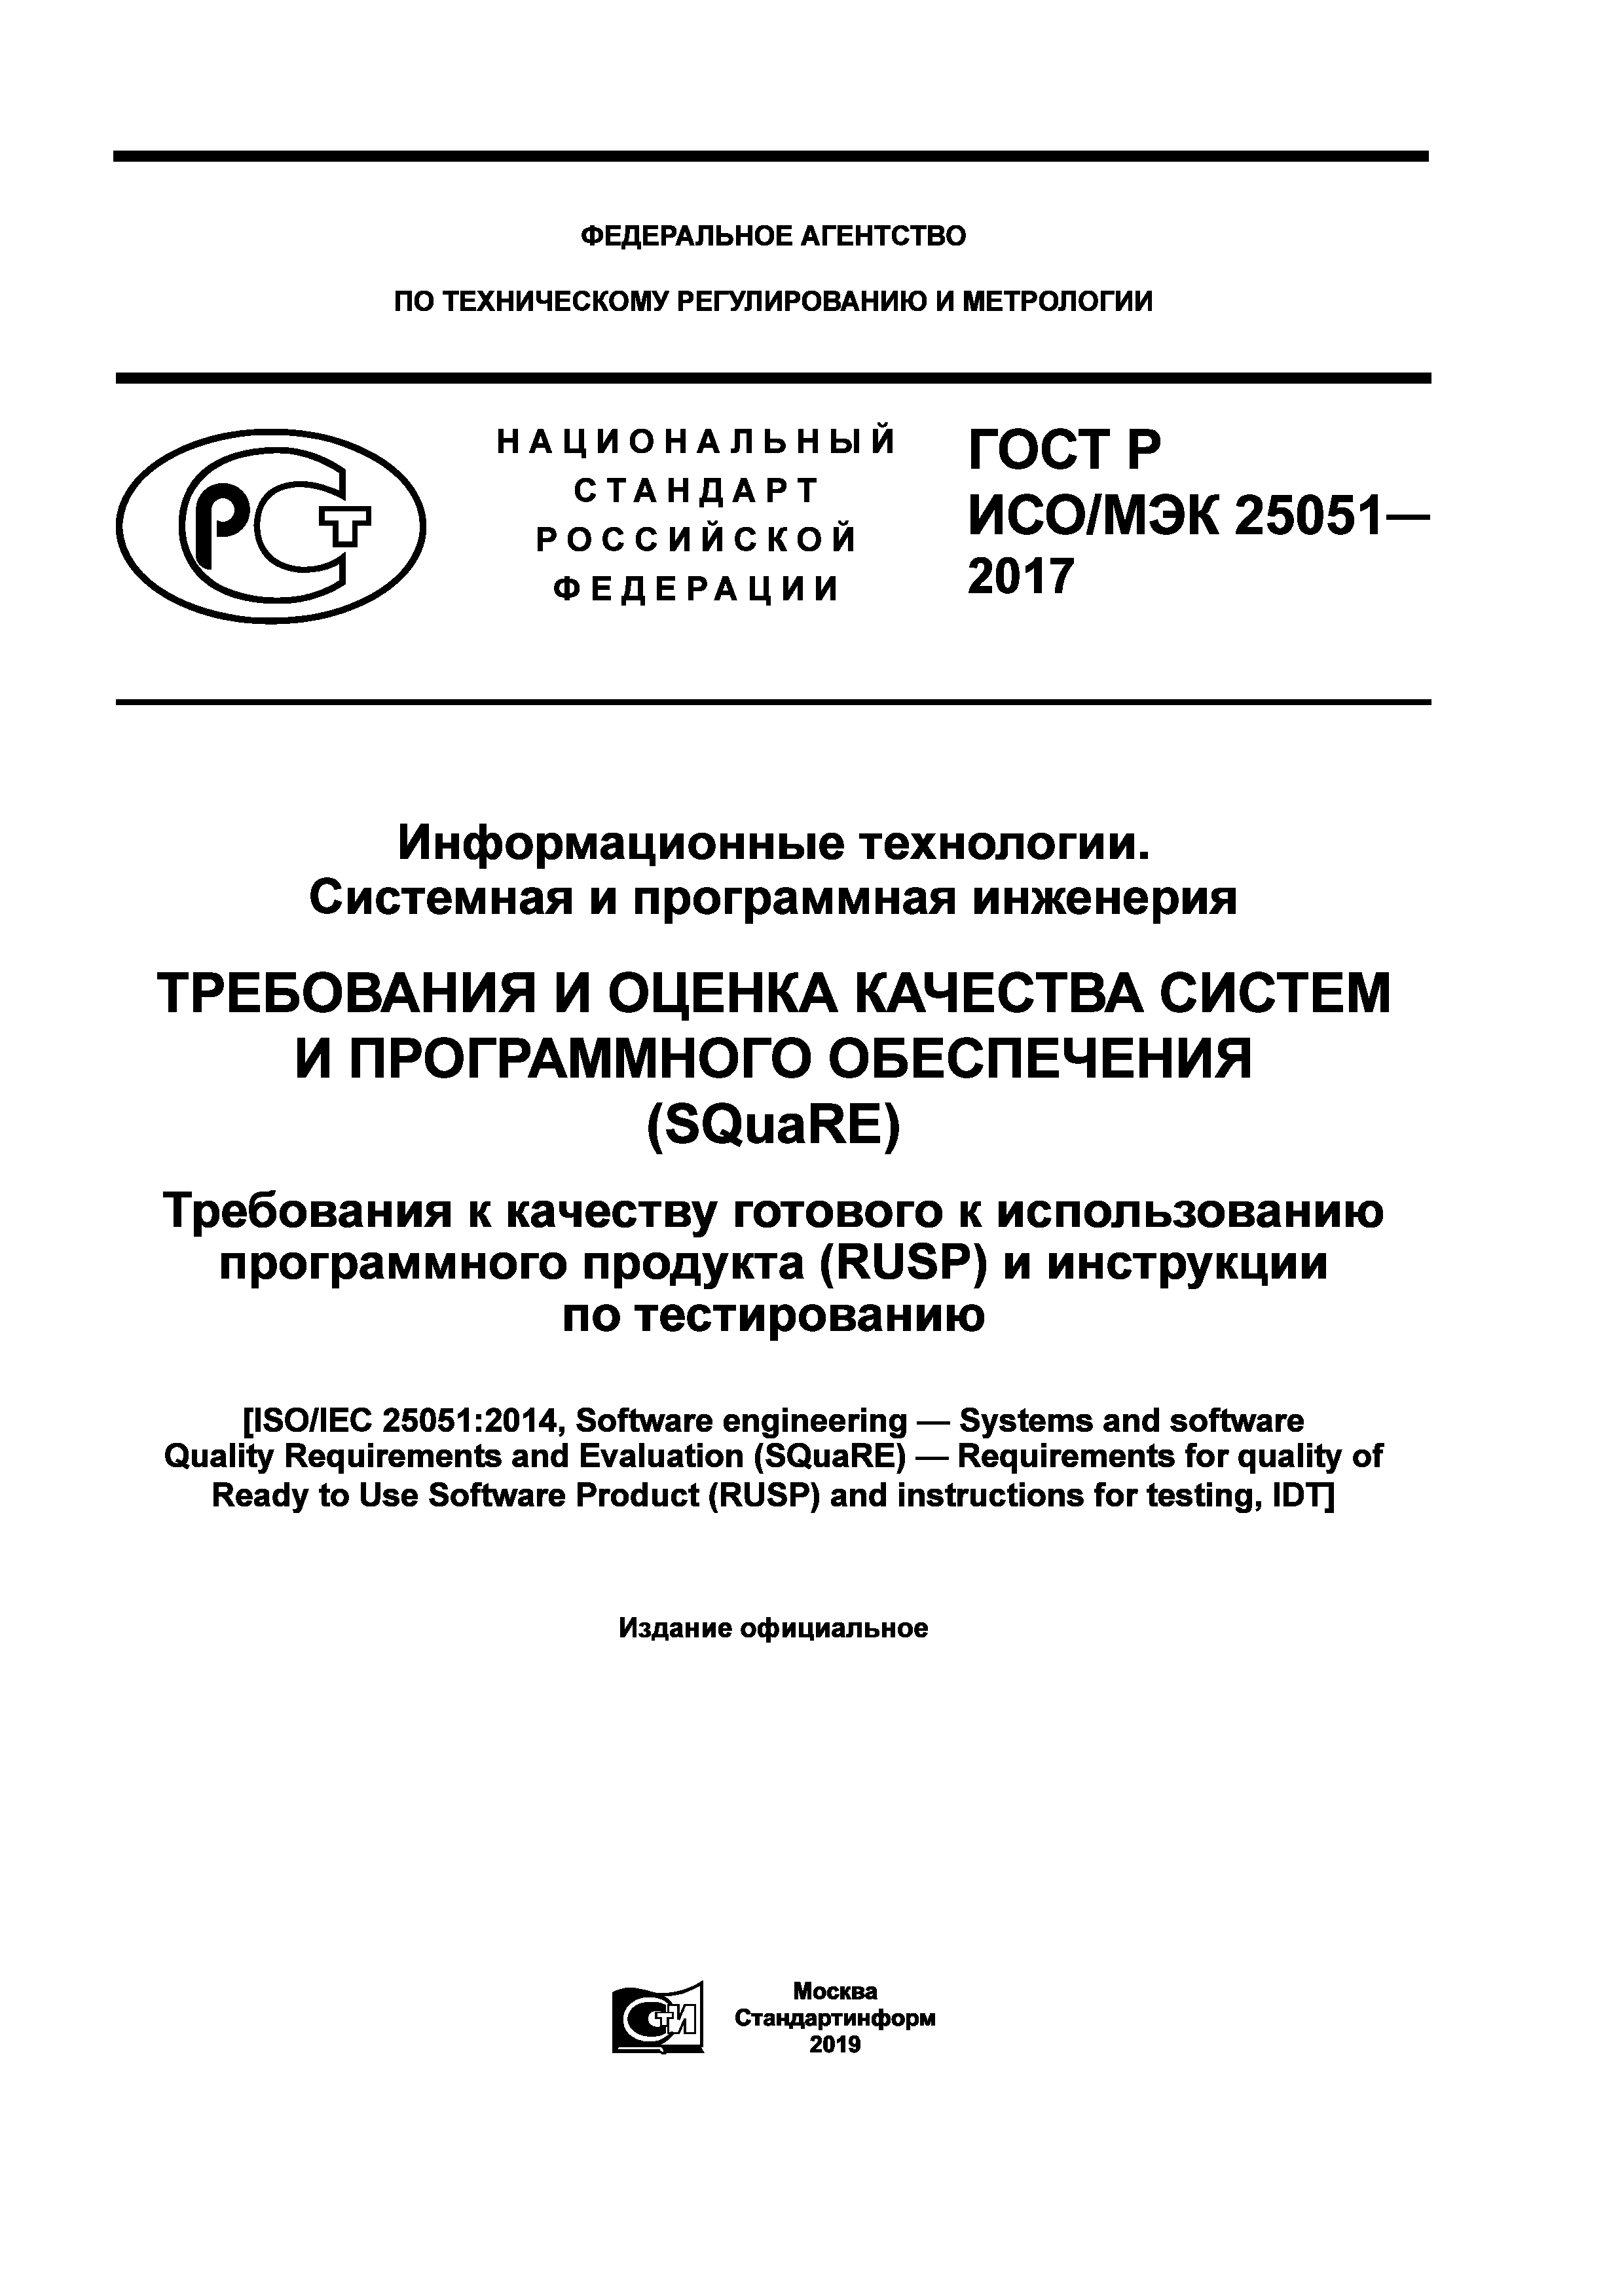 ГОСТ Р ИСО/МЭК 25051-2017